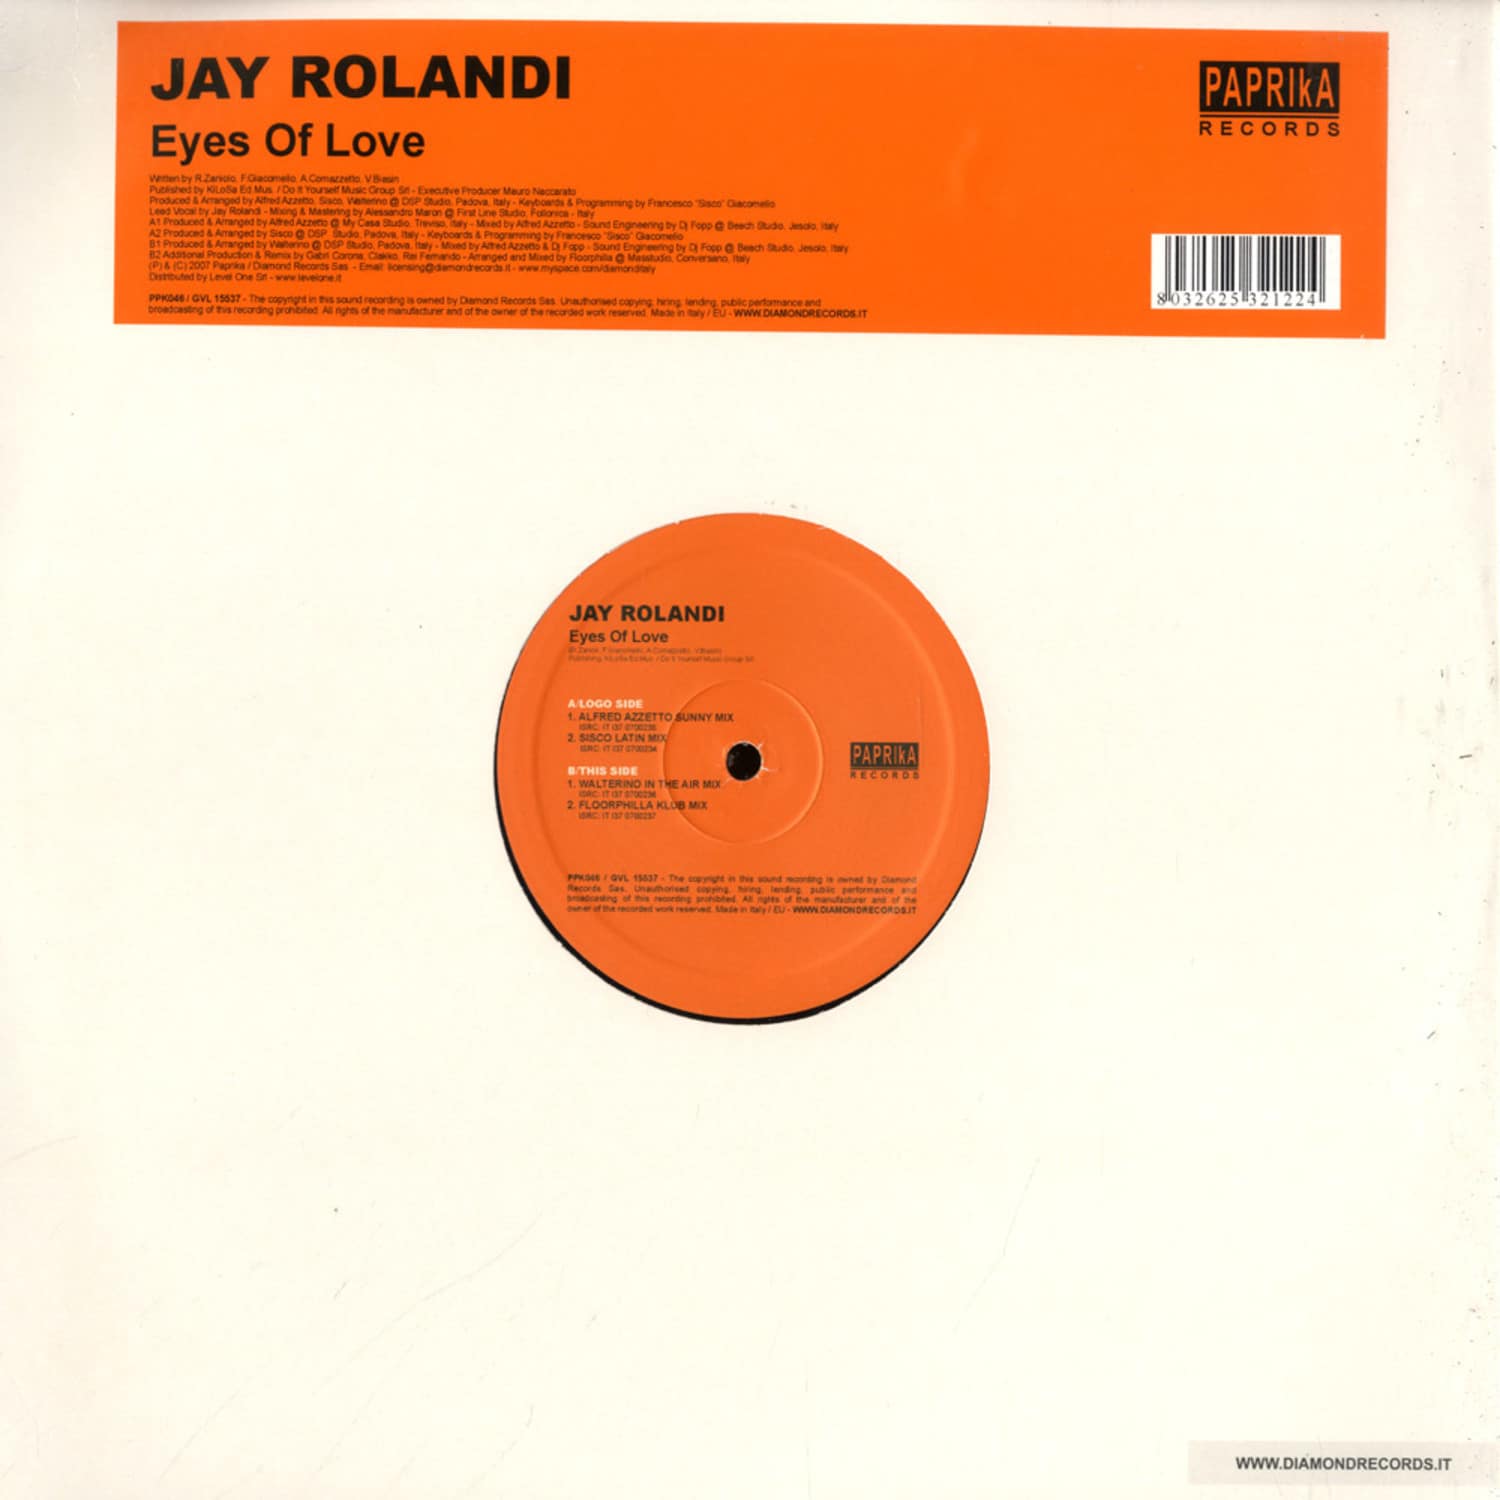 Jay Rolandi - EYES OF LOVE